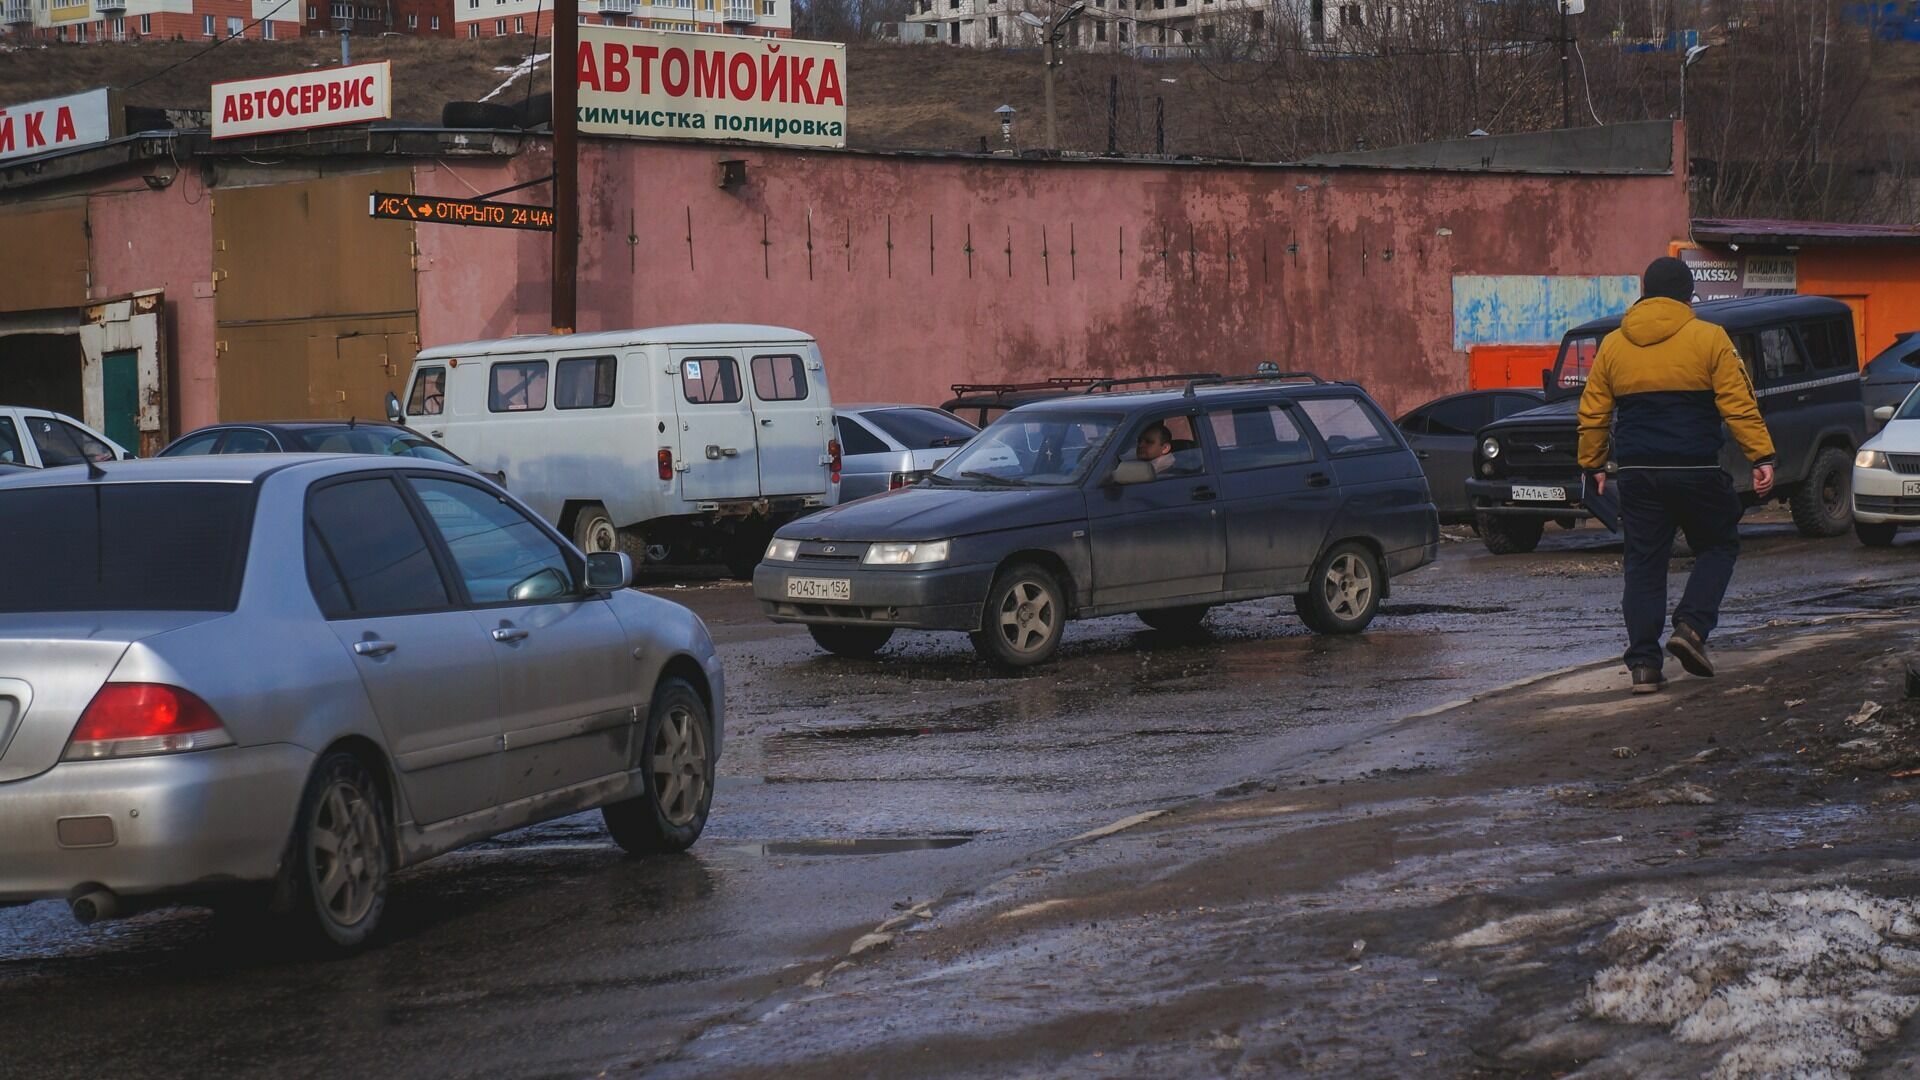 Отсутствие разметки на дорогах в Ростове-на-Дону грозит ростом аварий